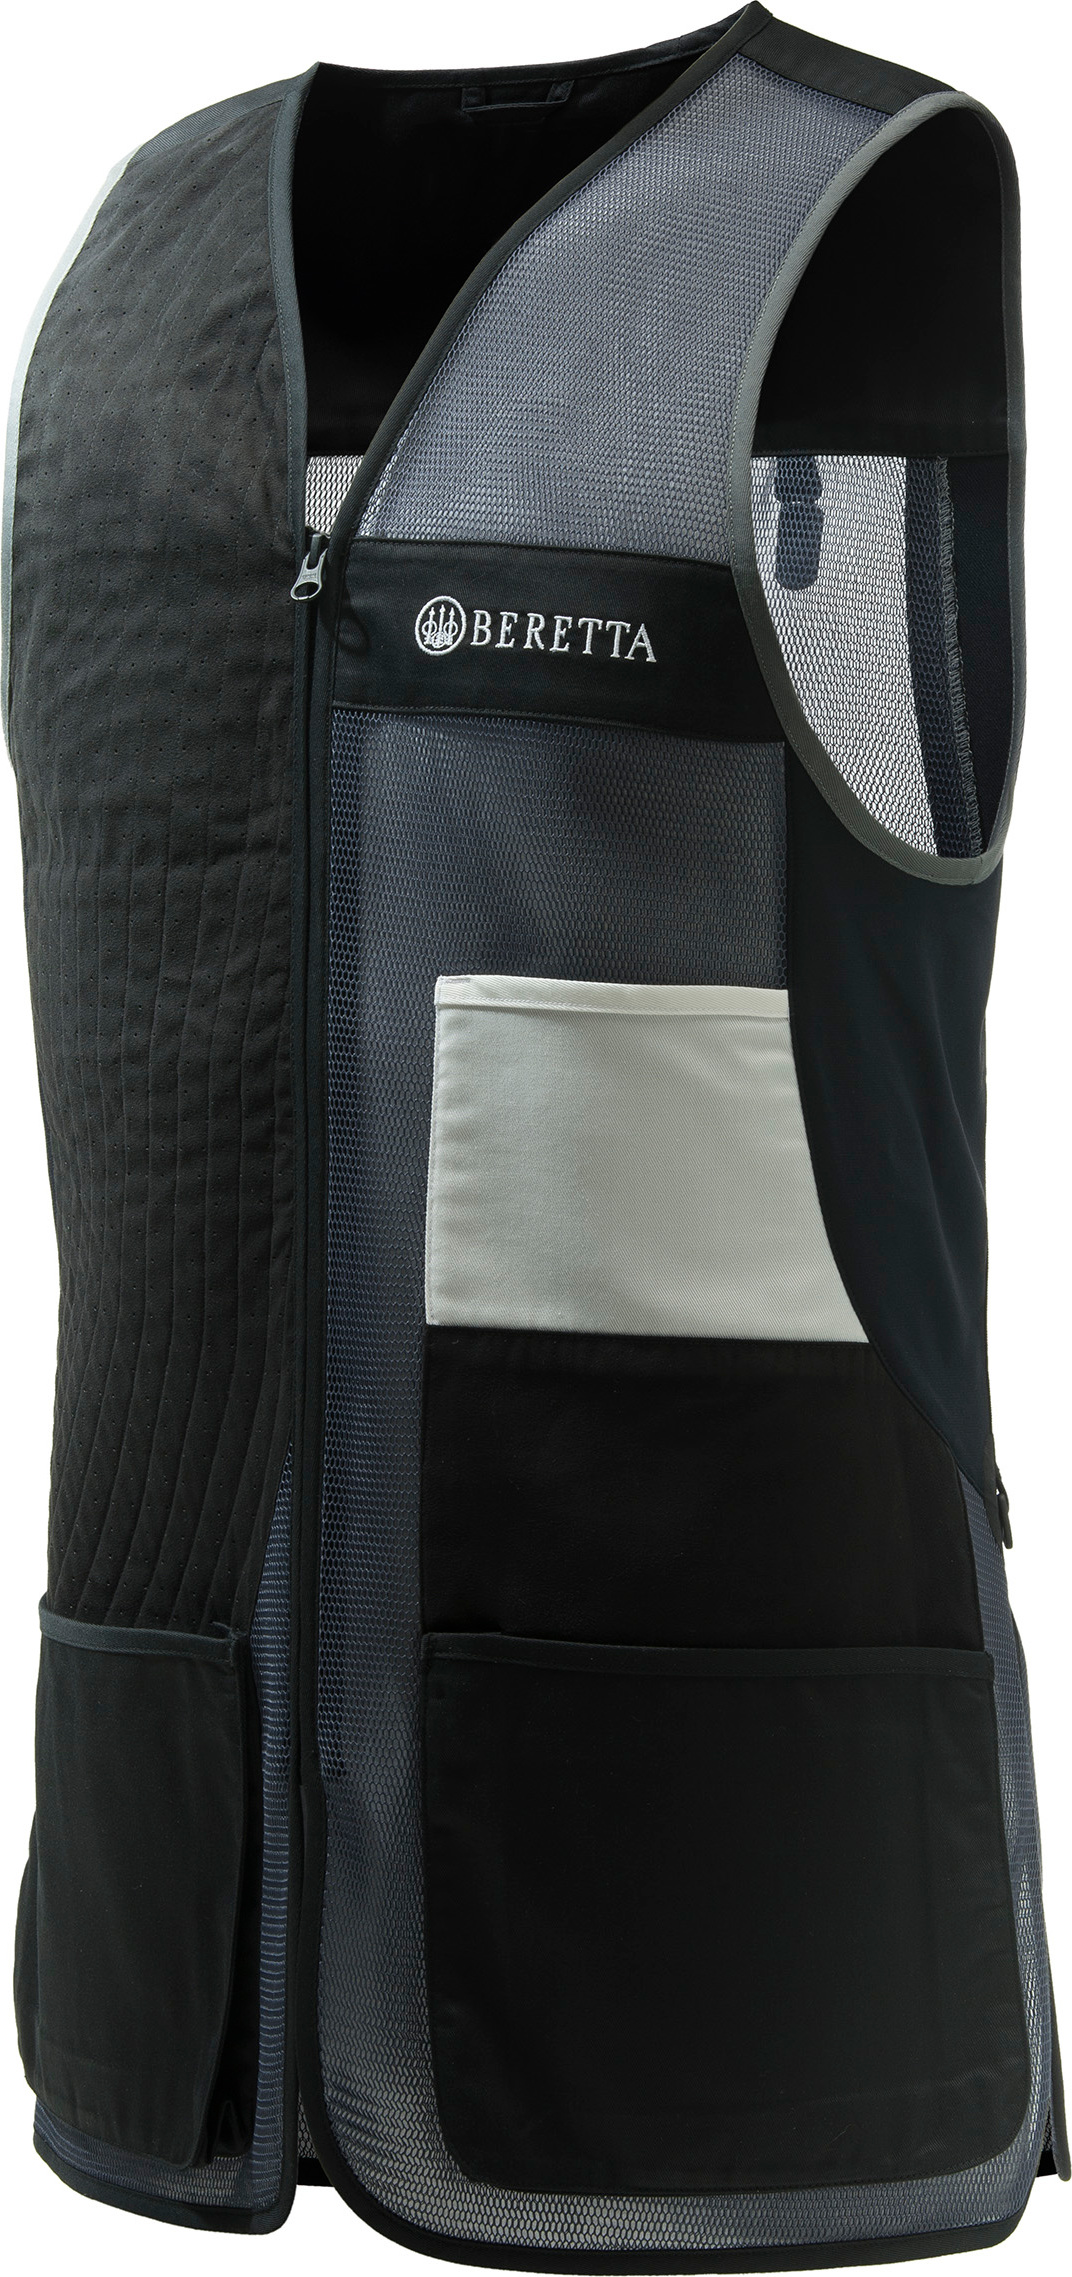 Beretta Men’s Uniform Pro 20.20 Black & Grey